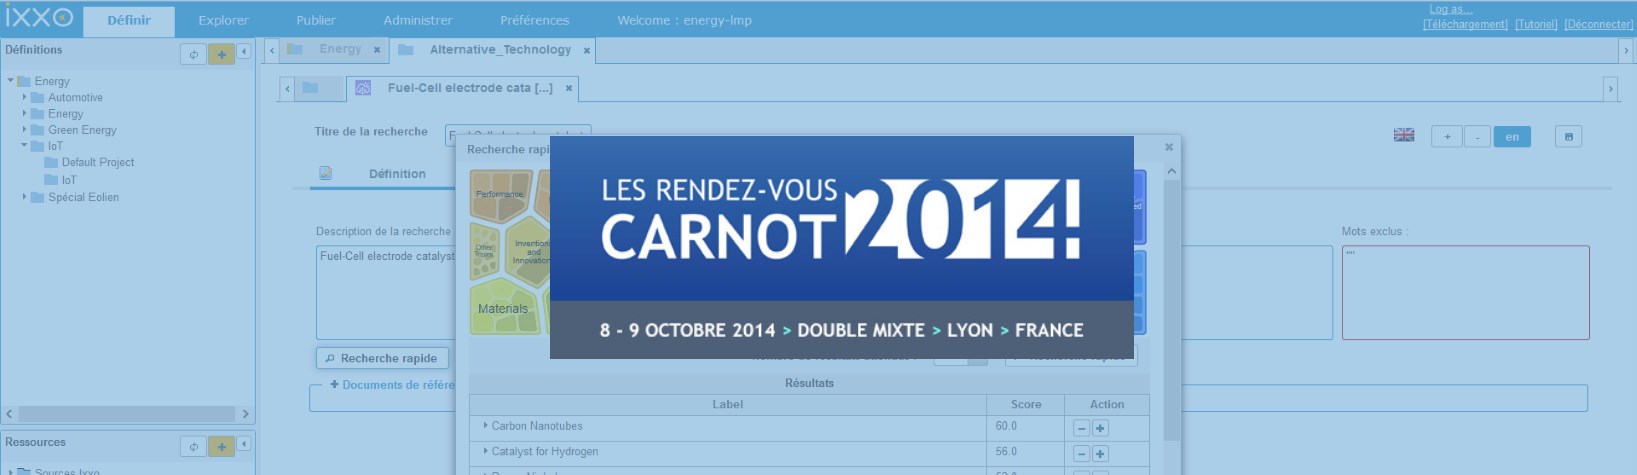 Rendez-vous CARNOT 2014 : IXXO V4 en avant-première